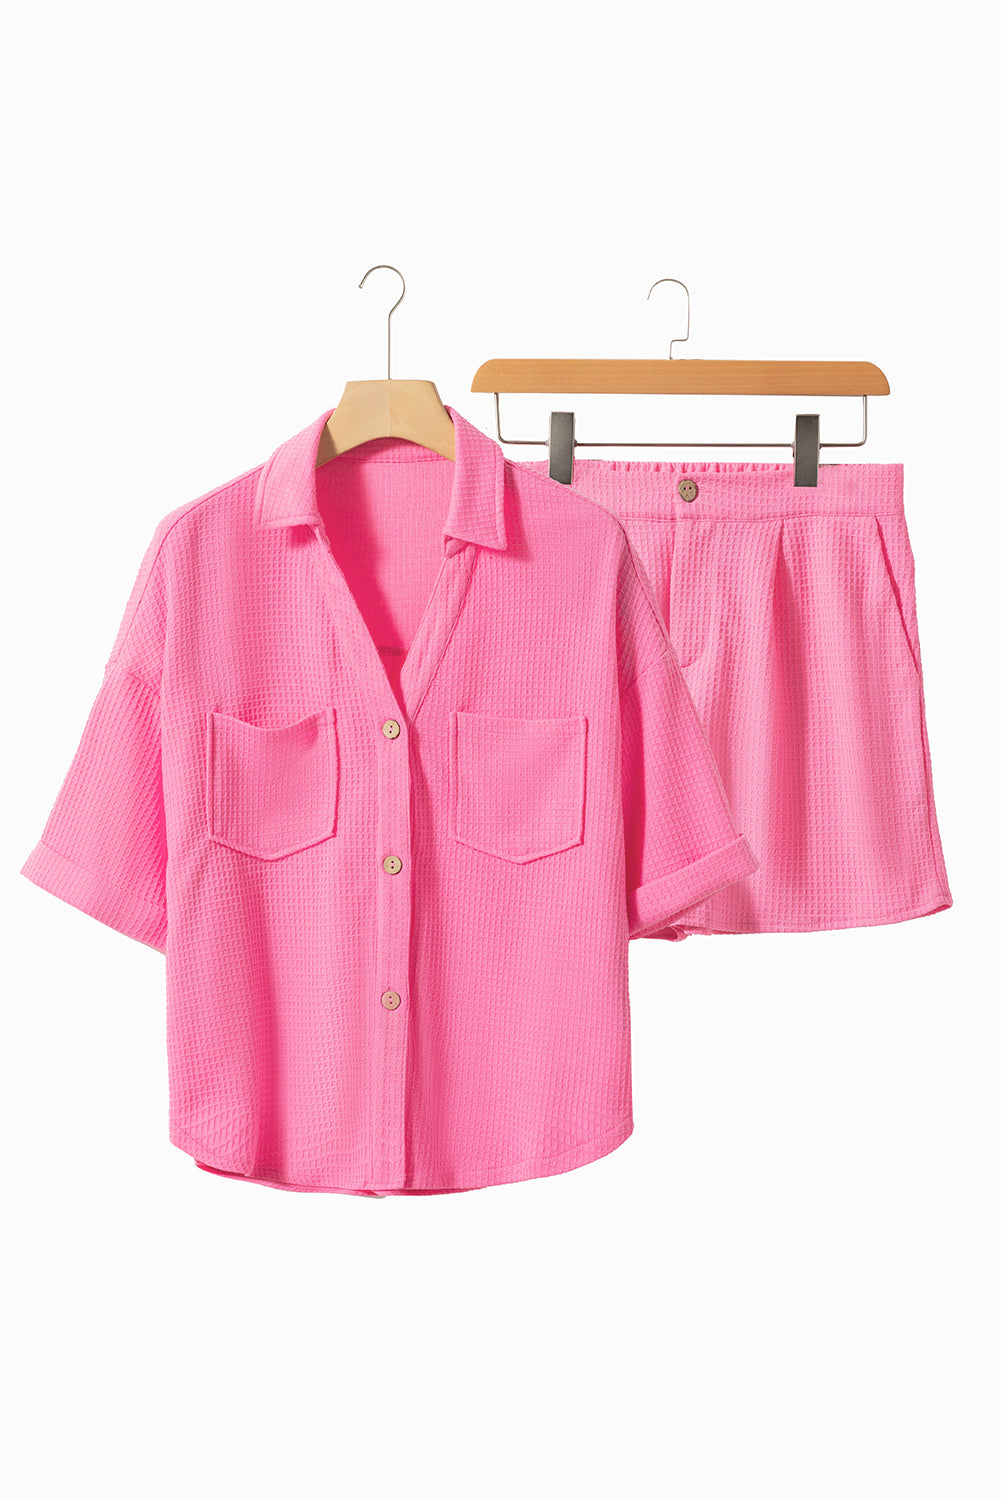 Tenue de short chemise à manches mi-longues texturée rose vif avec poche poitrine